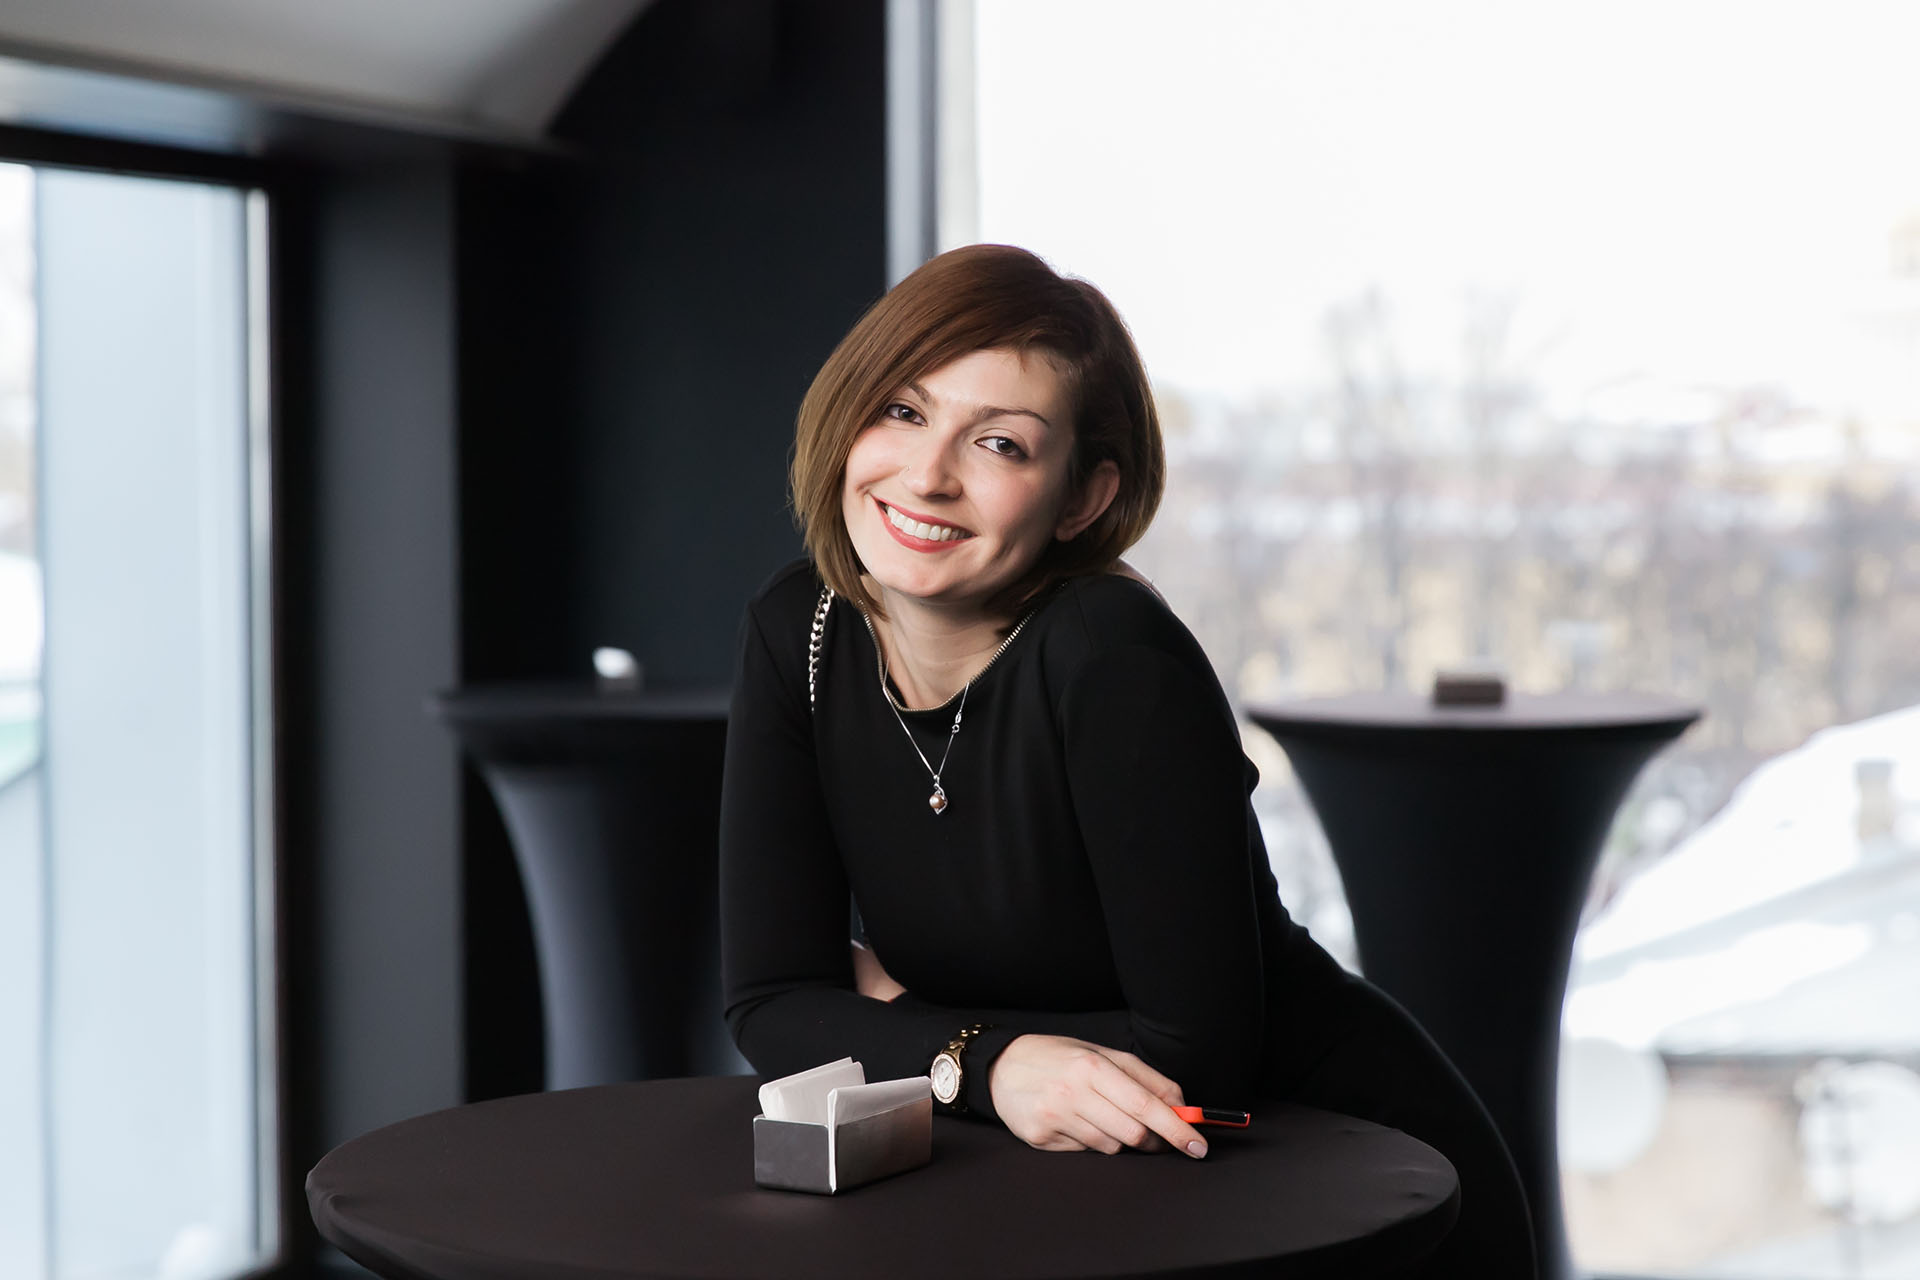 Лейла Салиева, директор по маркетингу российской b2b-платформы для работы с блогерами Epicstars